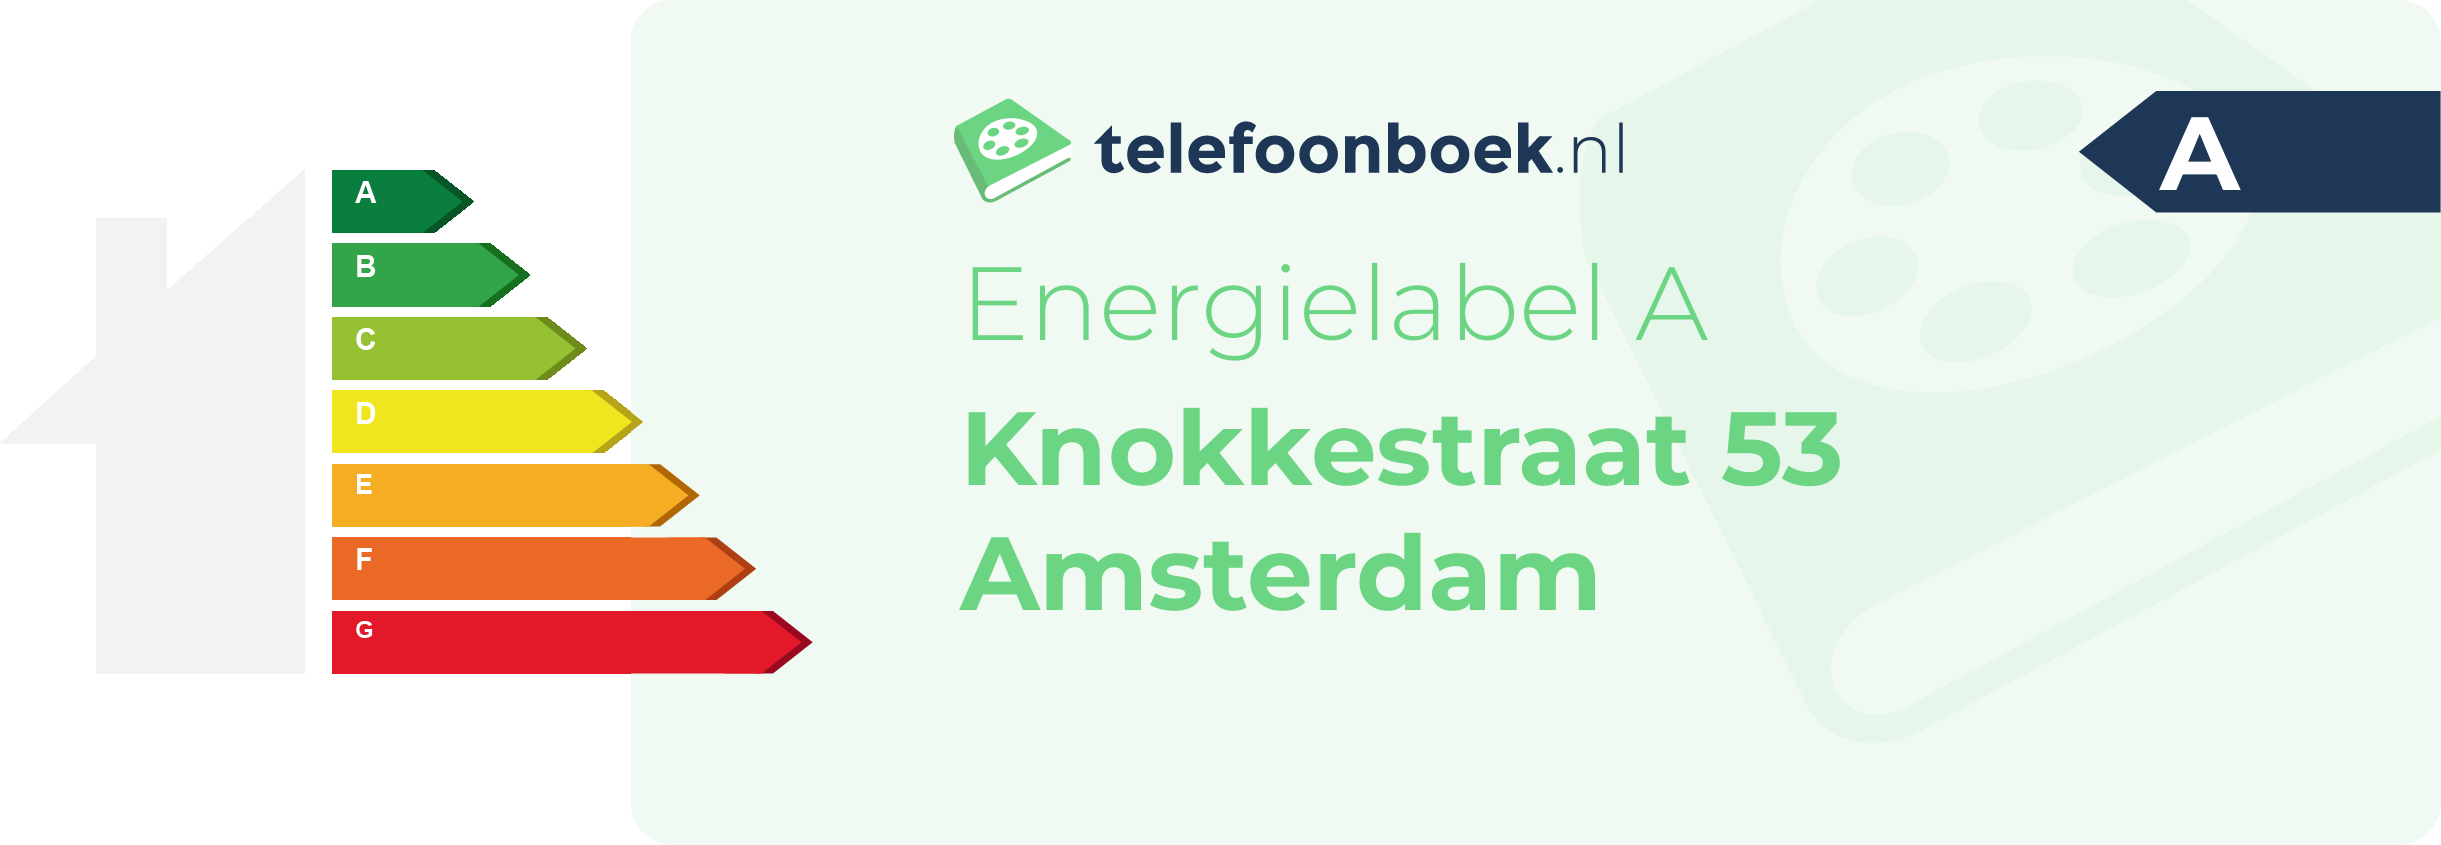 Energielabel Knokkestraat 53 Amsterdam